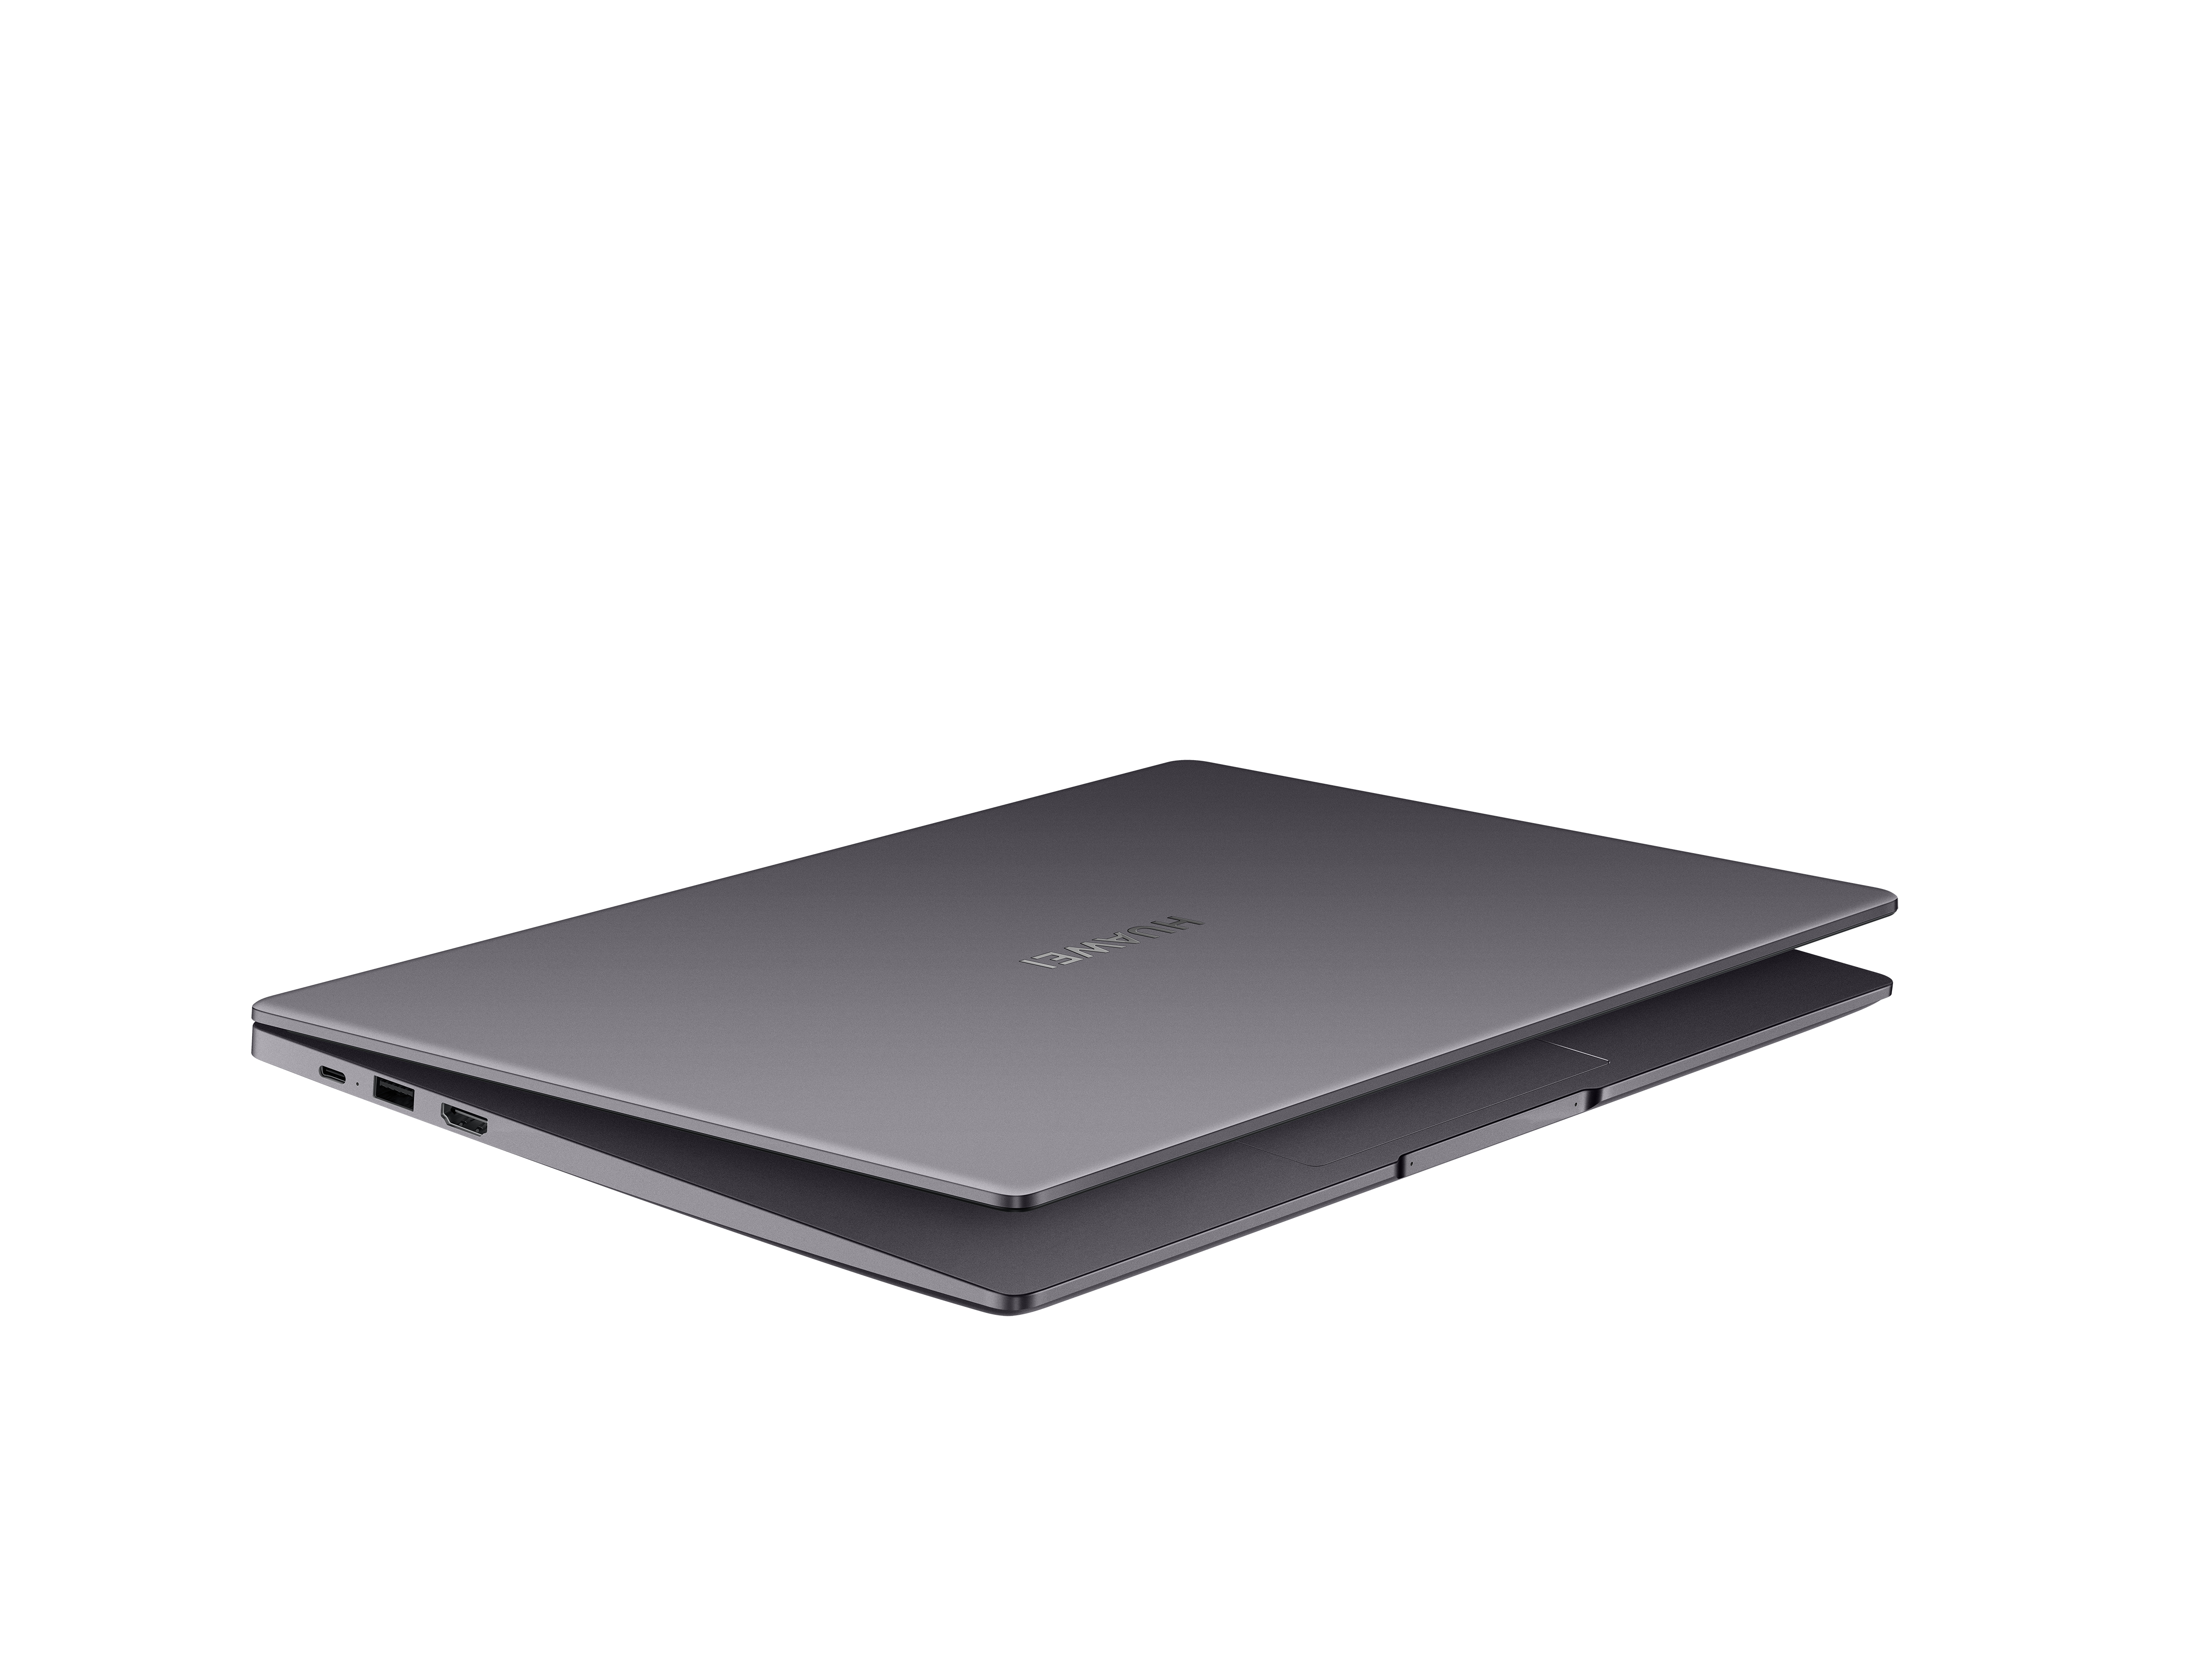 Huawei continúa su expansión en el segmento de portátiles y lanza HUAWEI MateBook D 15 2021